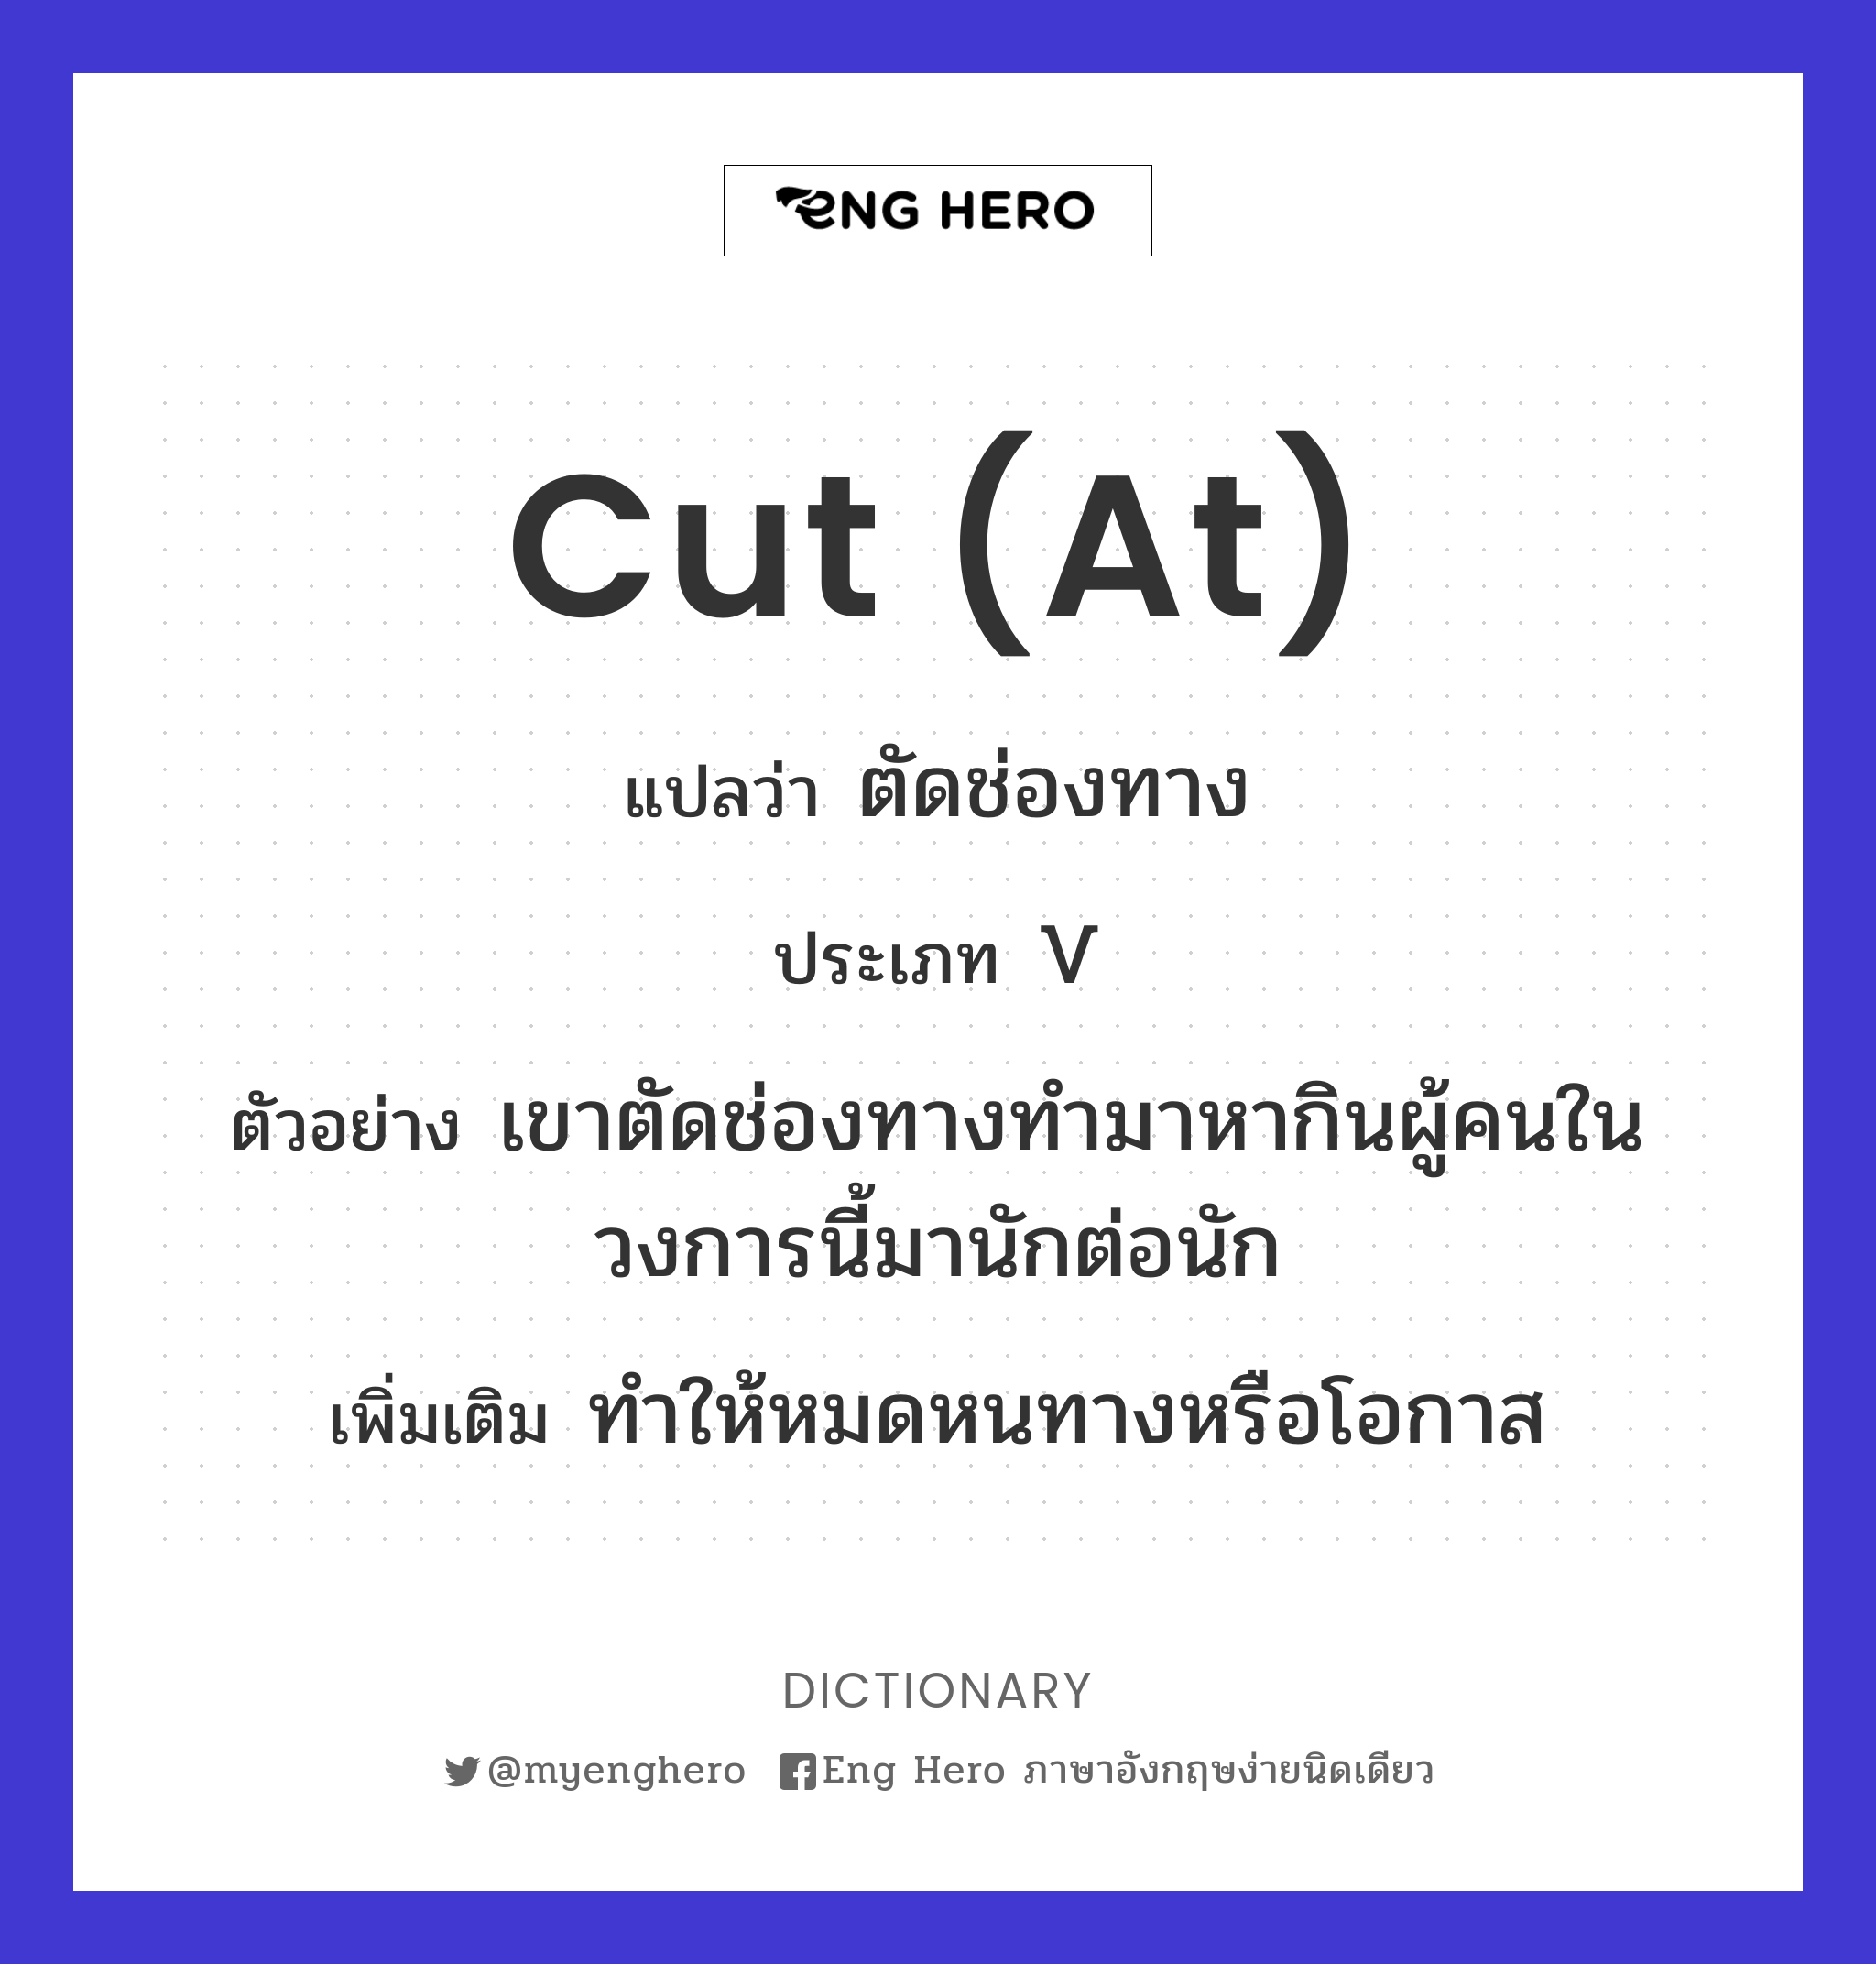 cut (at)